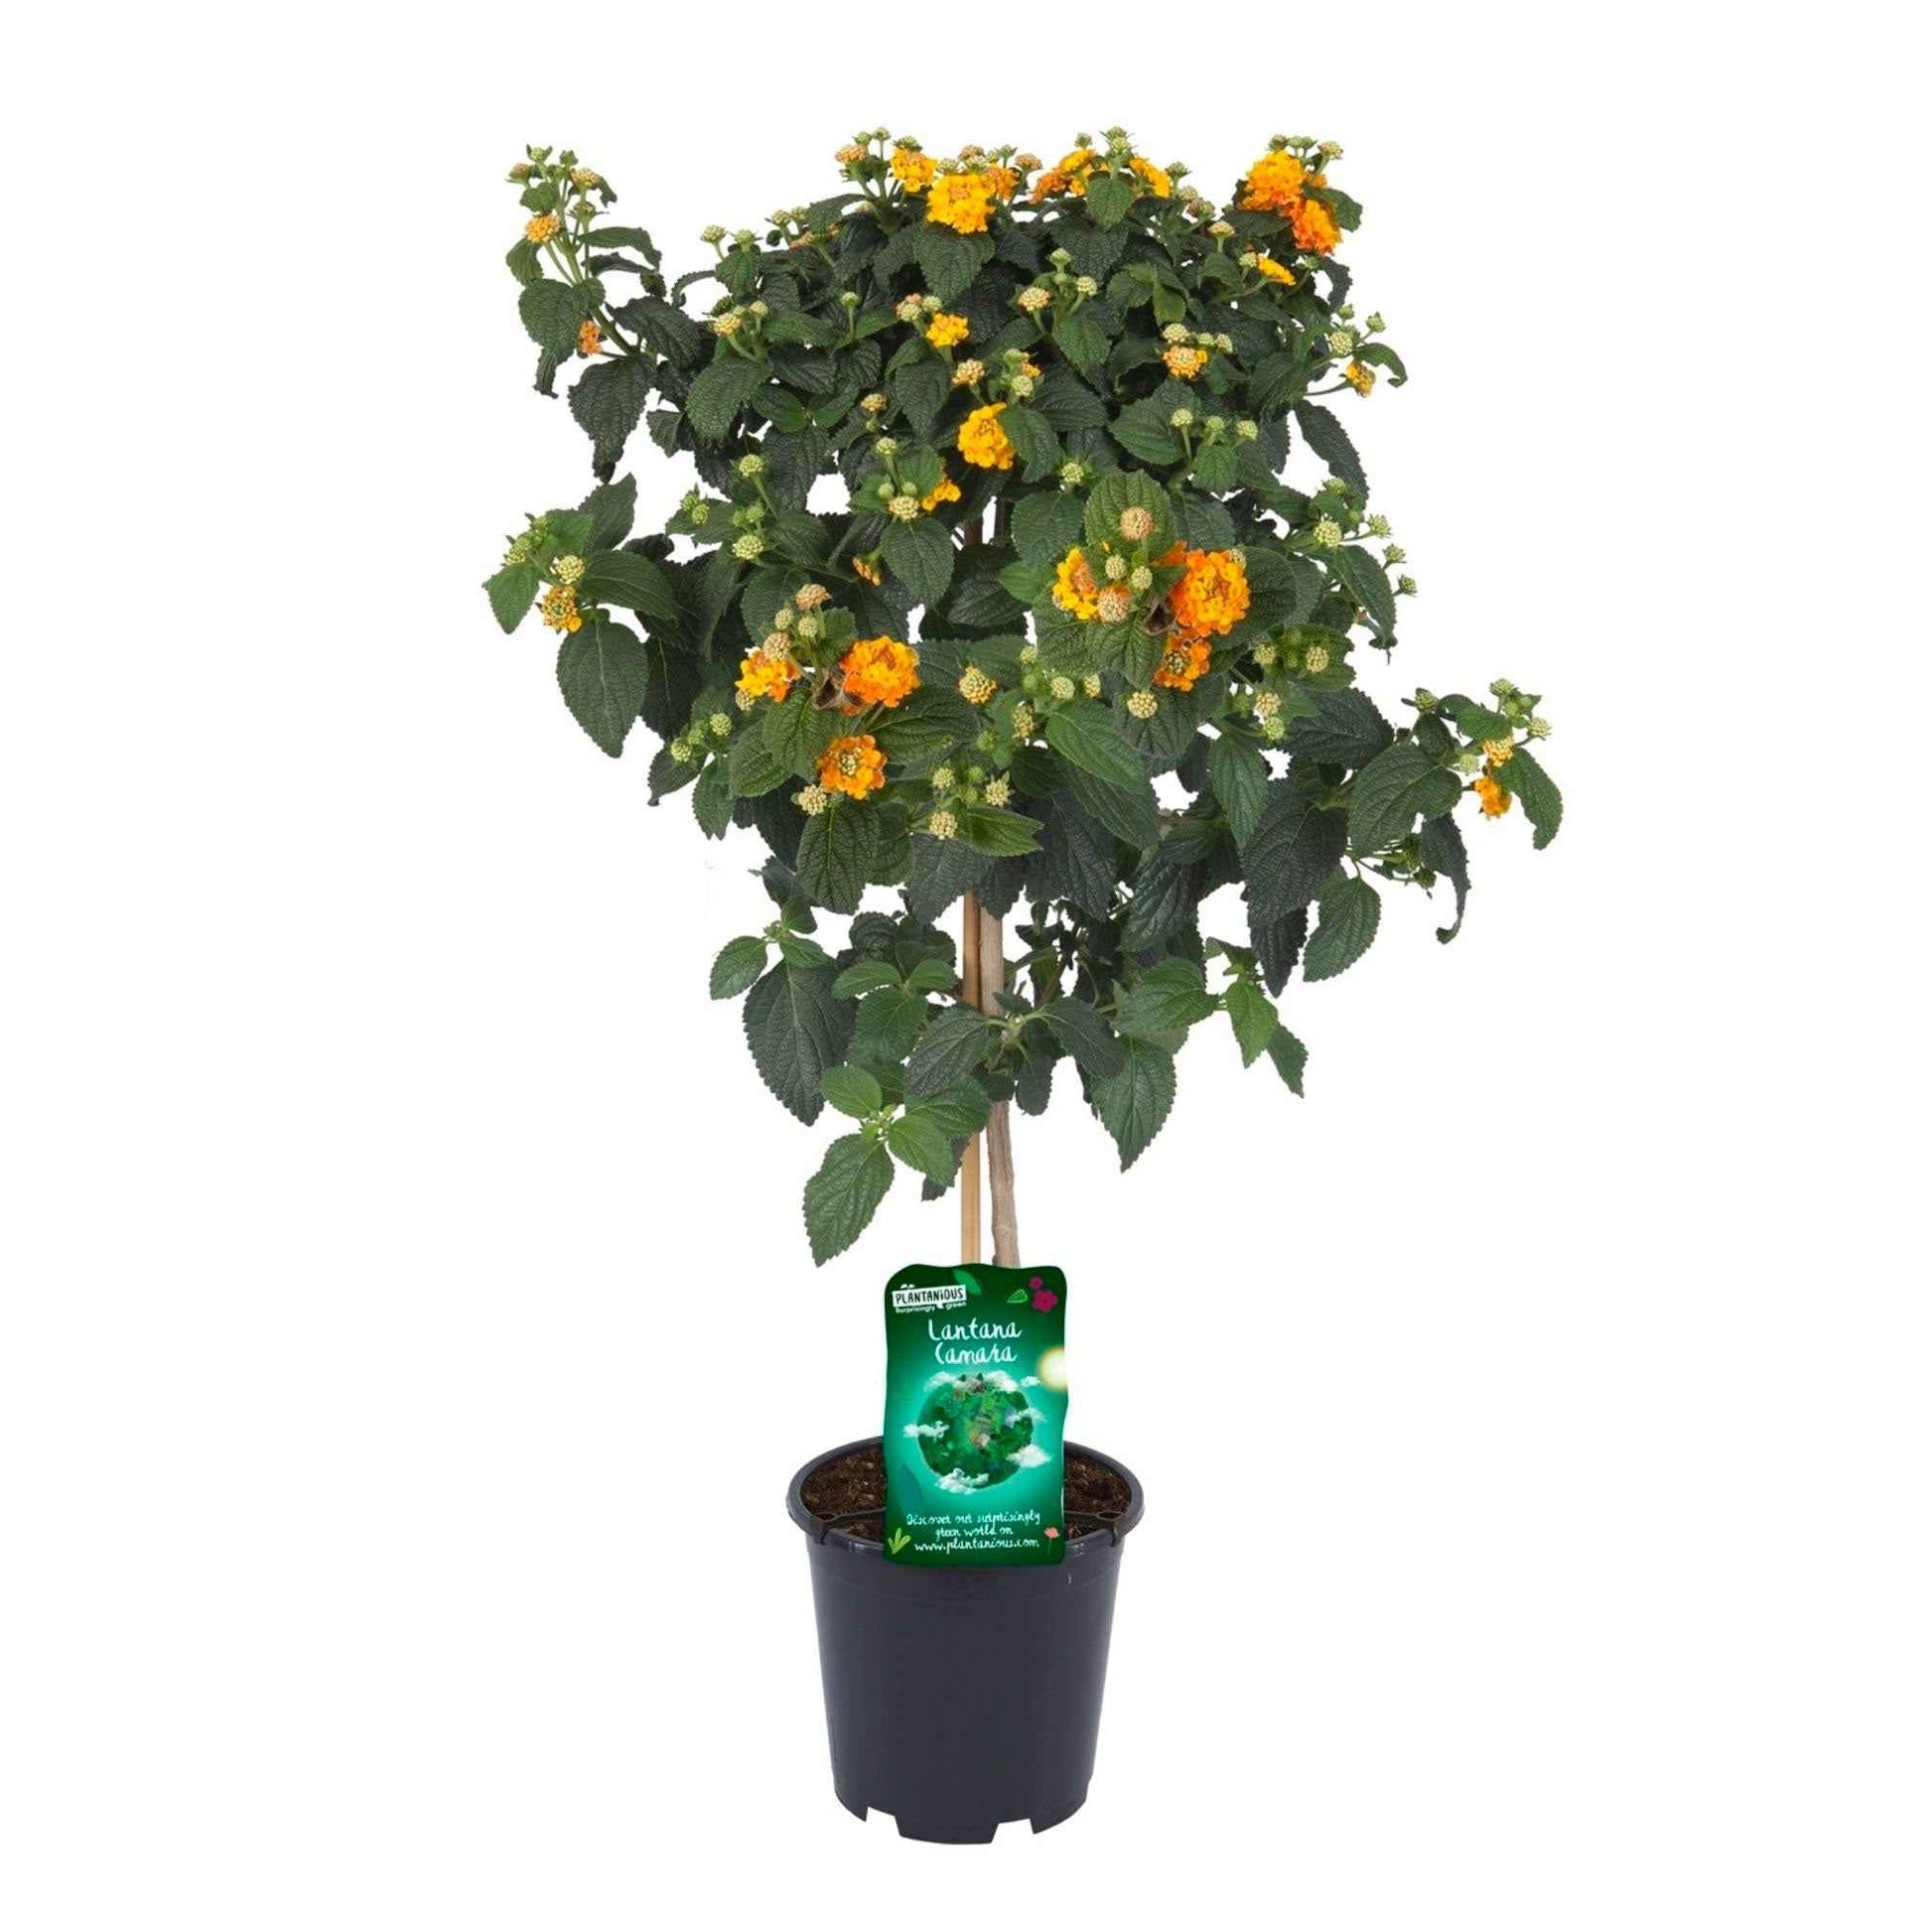 Wandelröschen Lantana camara Orange - Gartenpflanzen